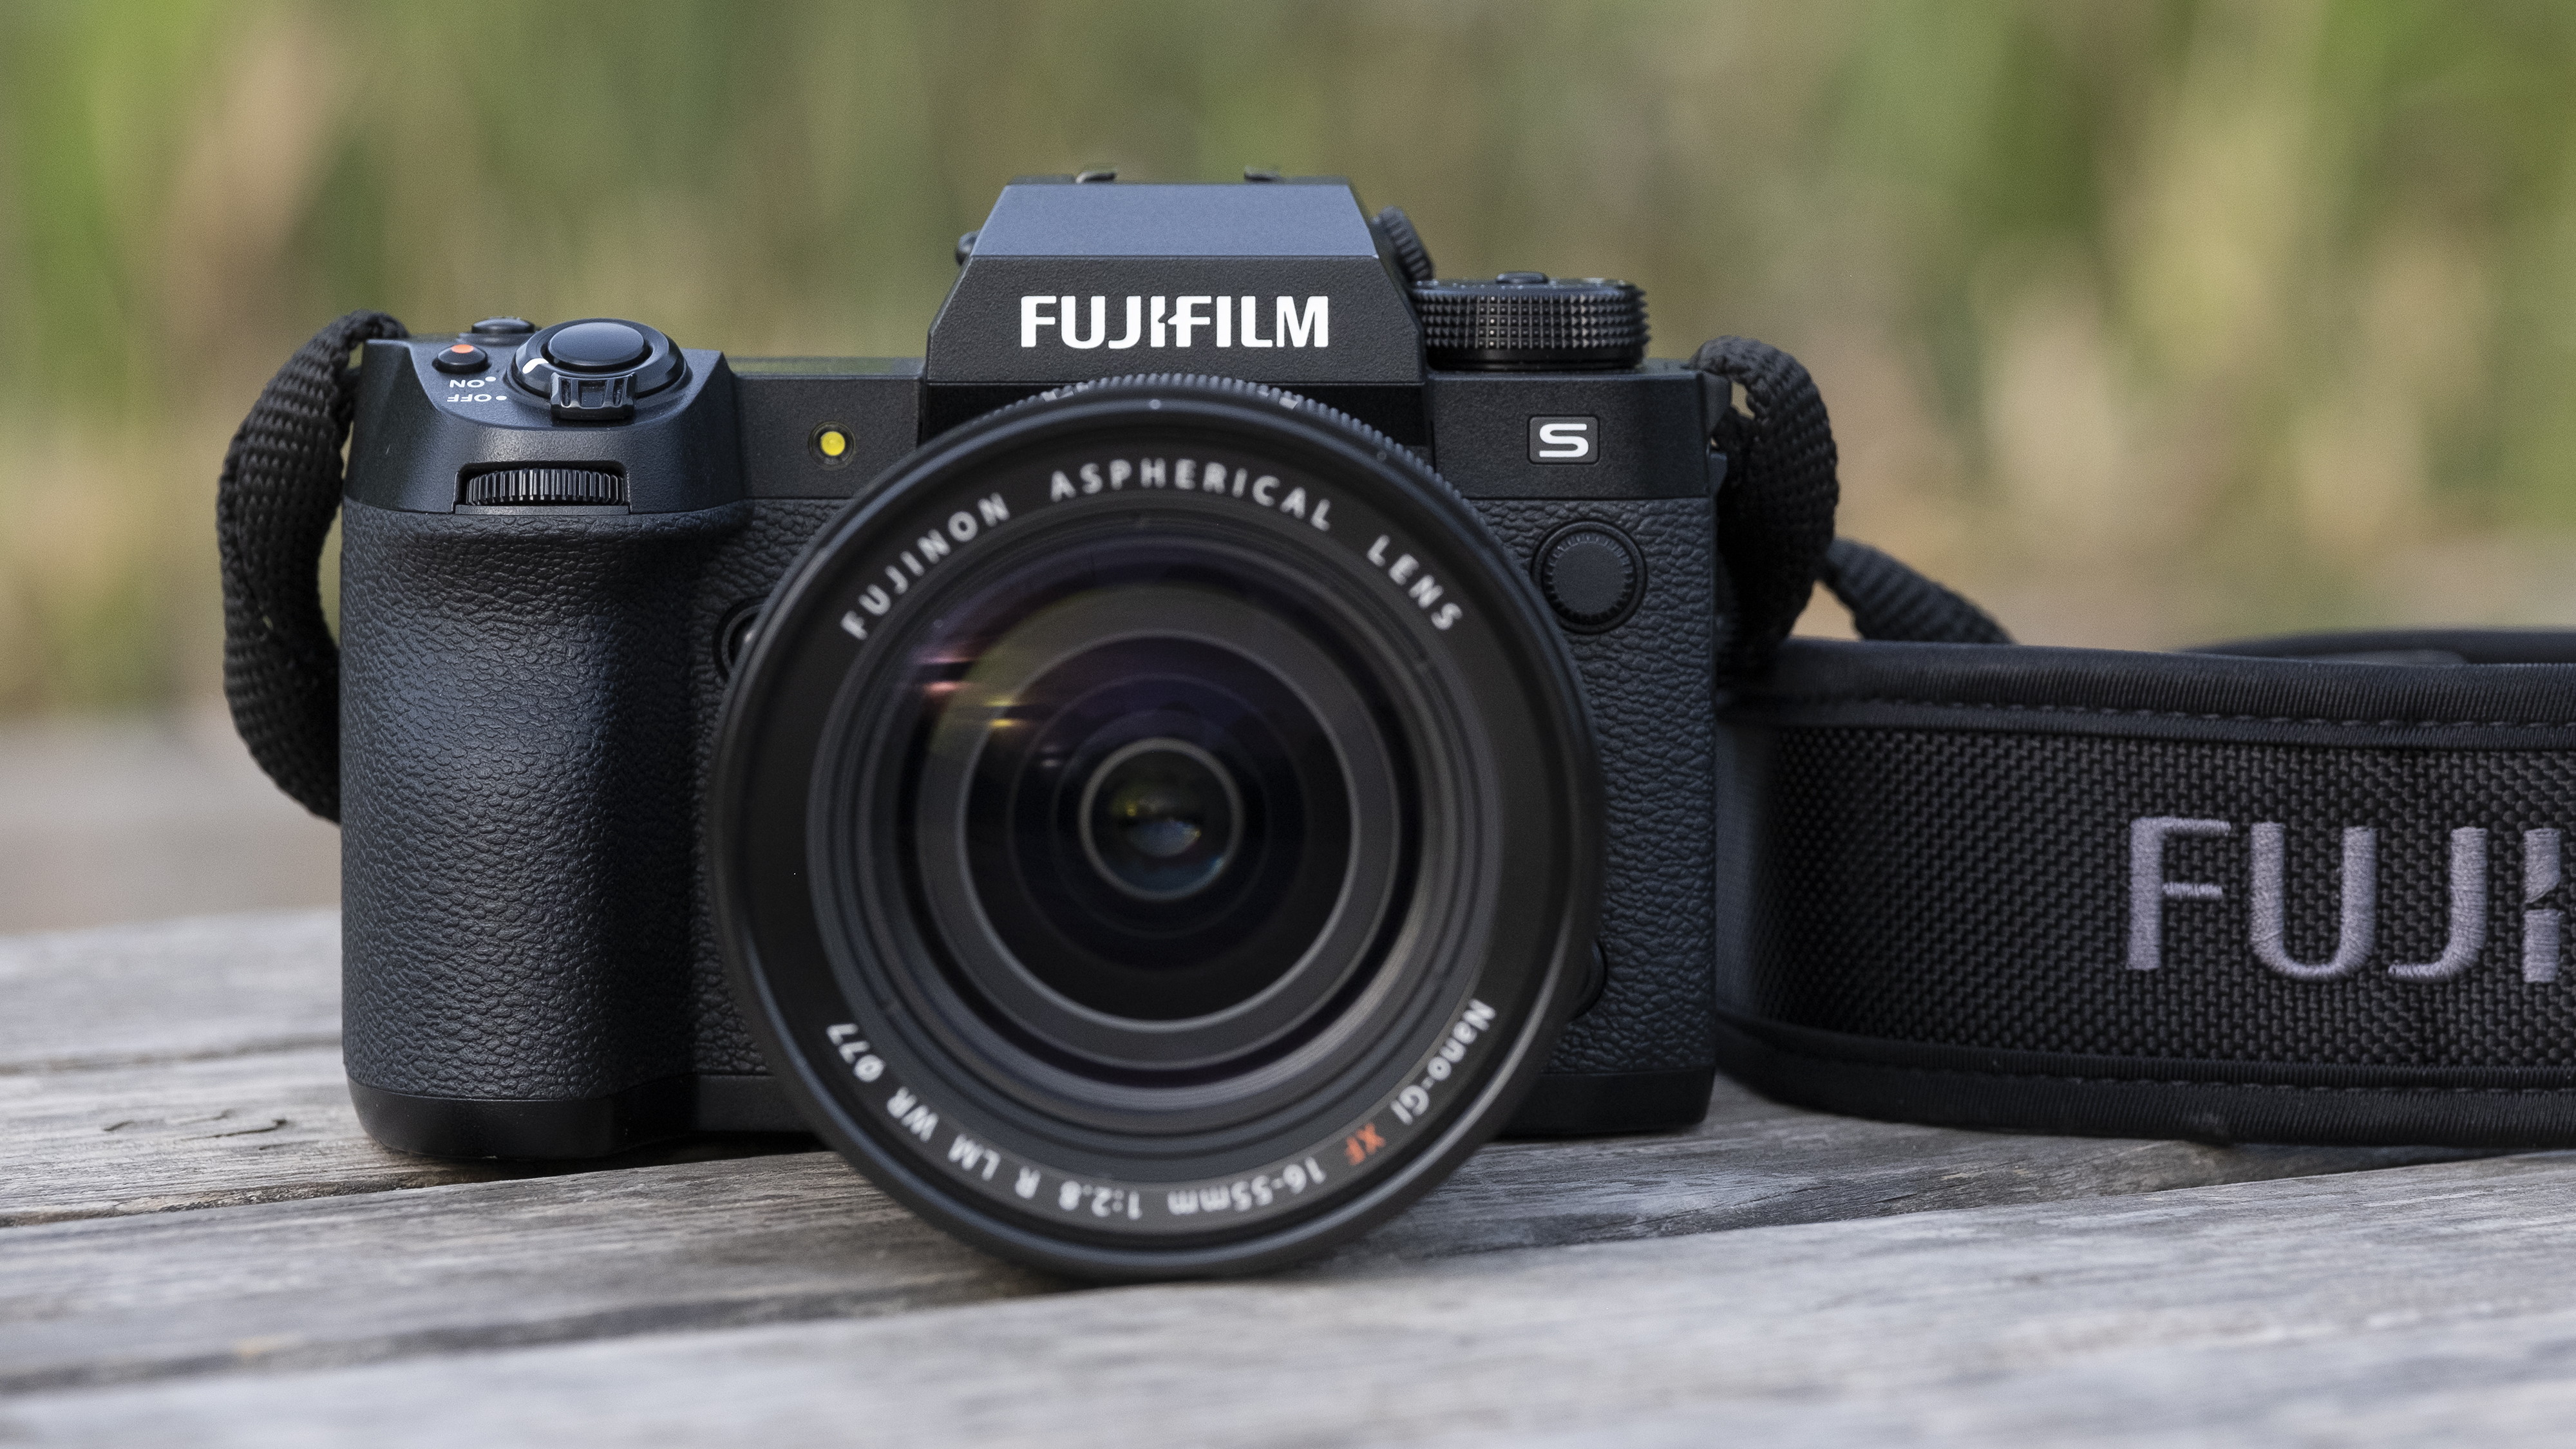 Fujifilm XS20 vs. Fujifilm XH2s - Real world comparison 